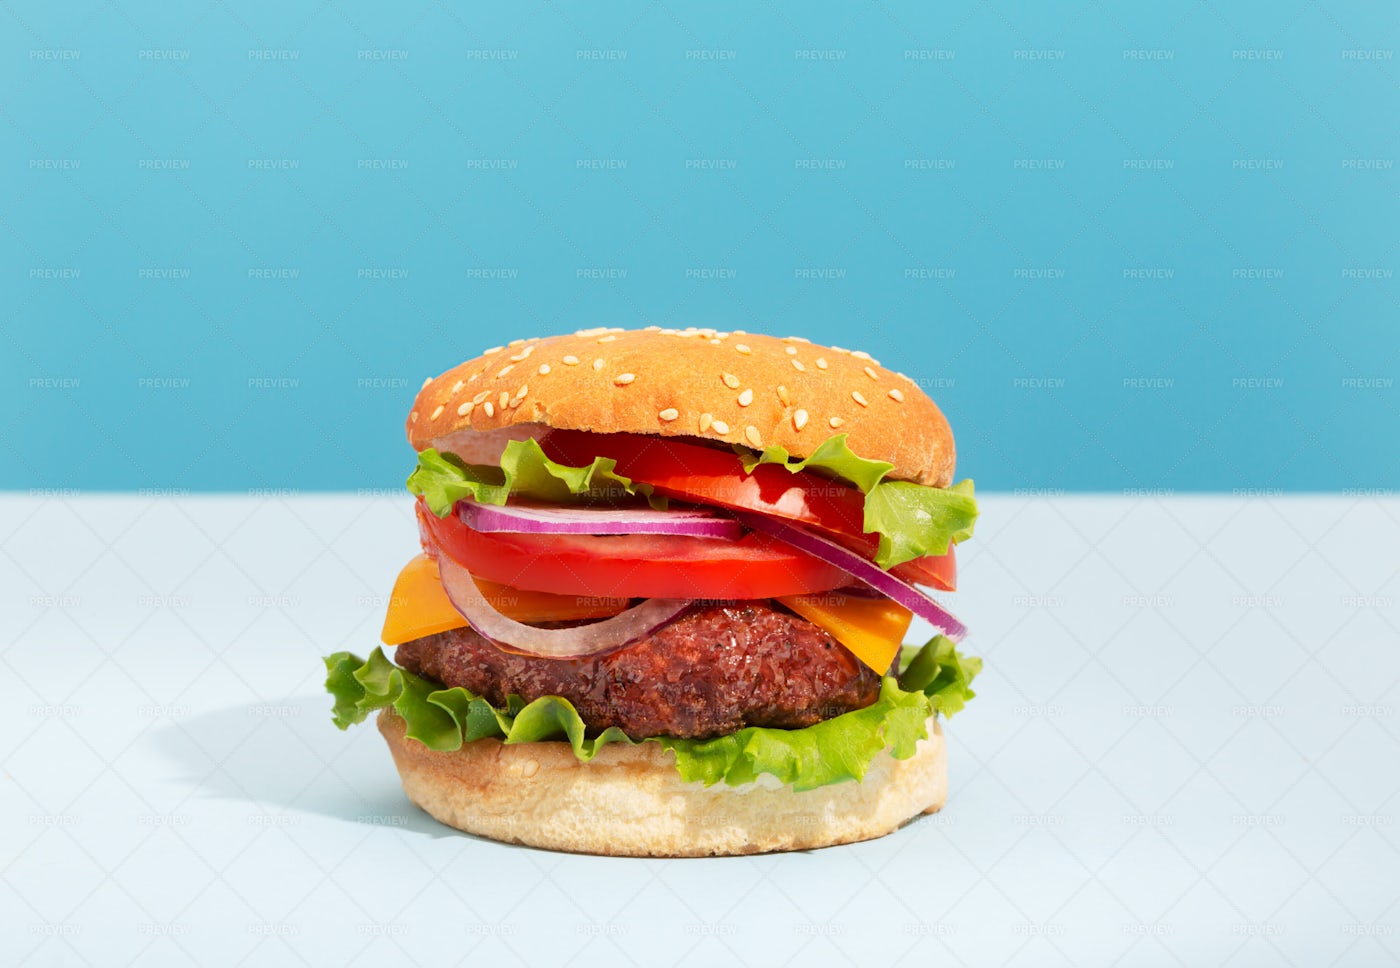 Hamburger In A Bun: Stock Photos